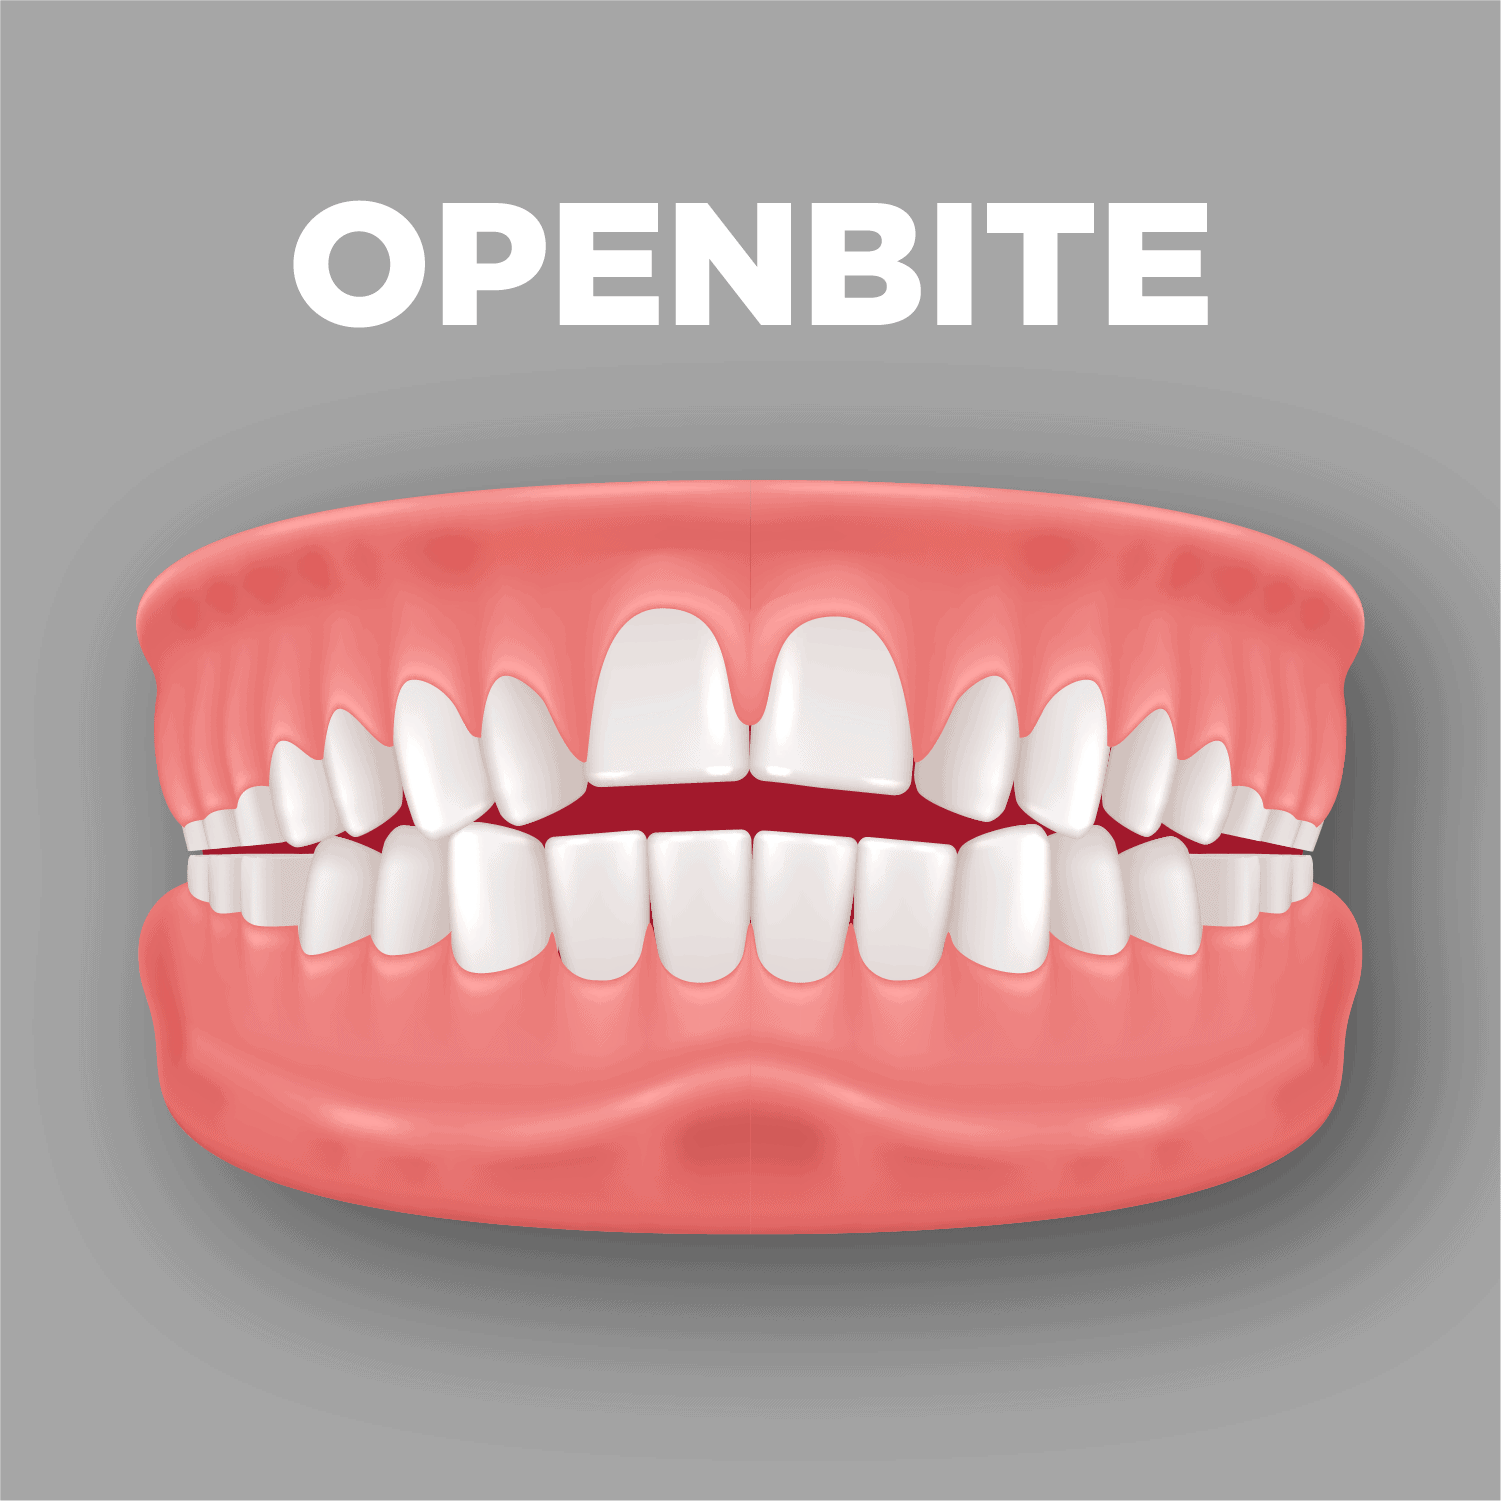 Openbite